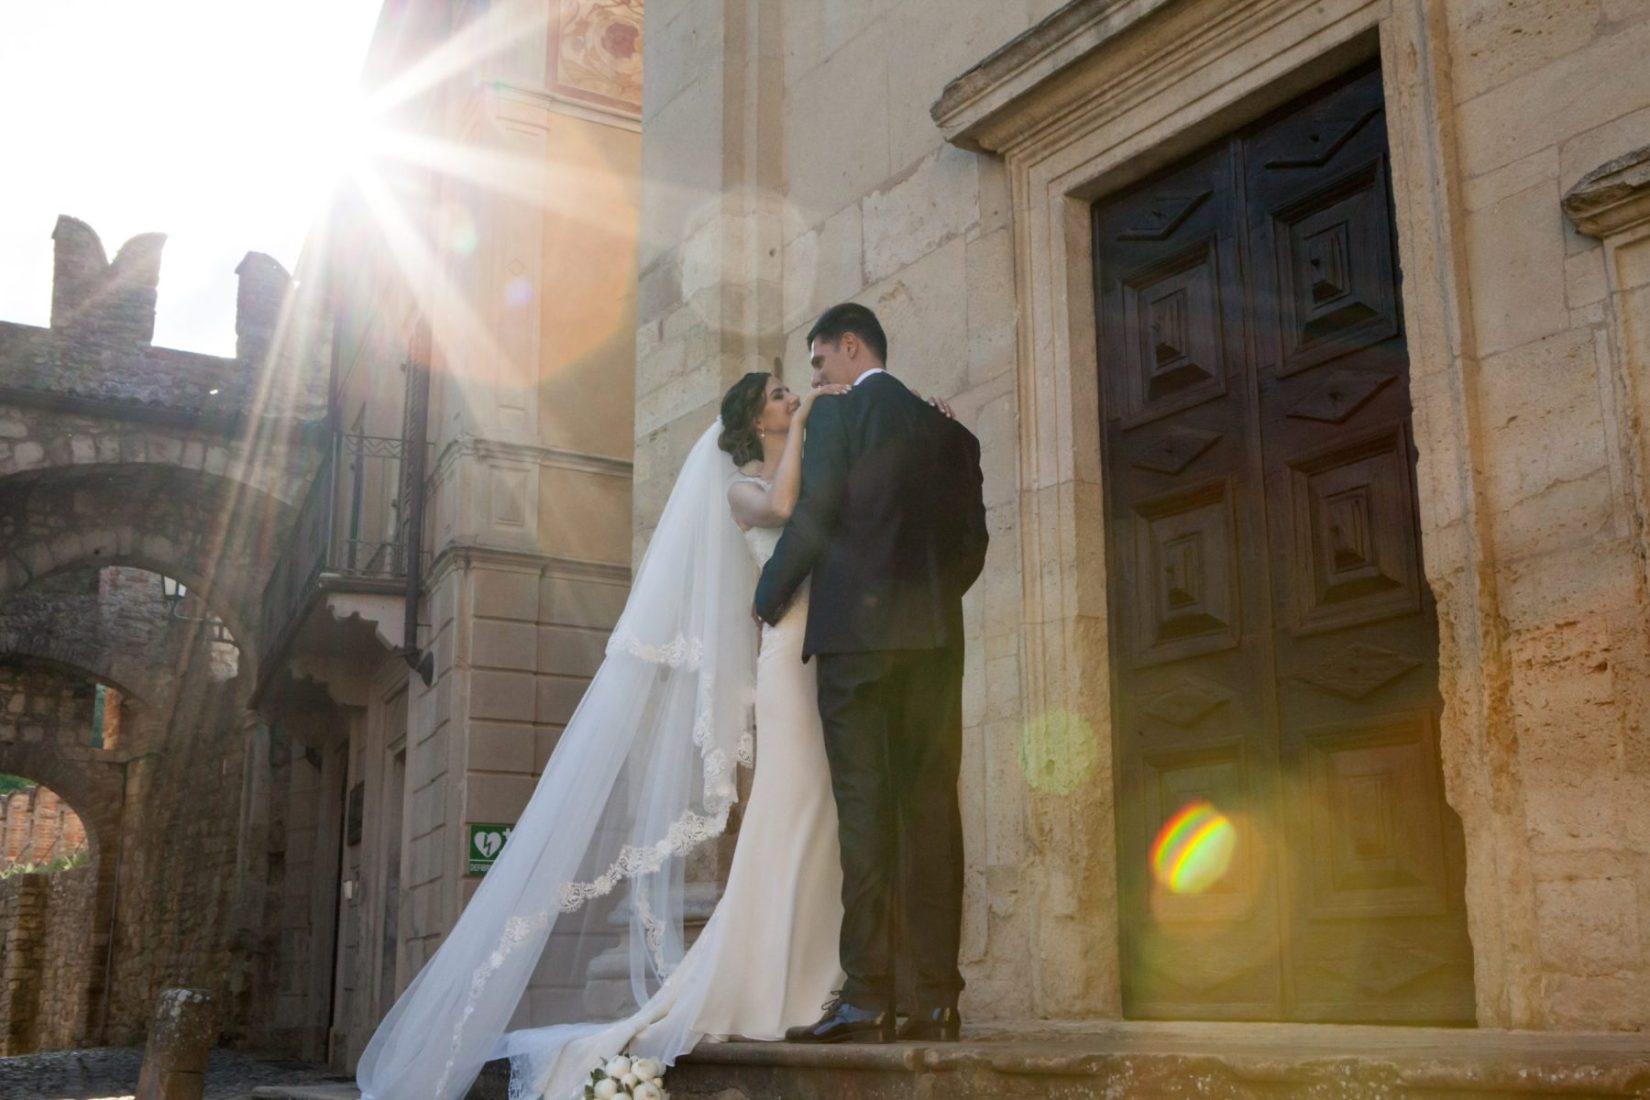 fotografia sposi fuori dalla chiesa appena sposati romantico con giochi di luce matrimonio cerimonie